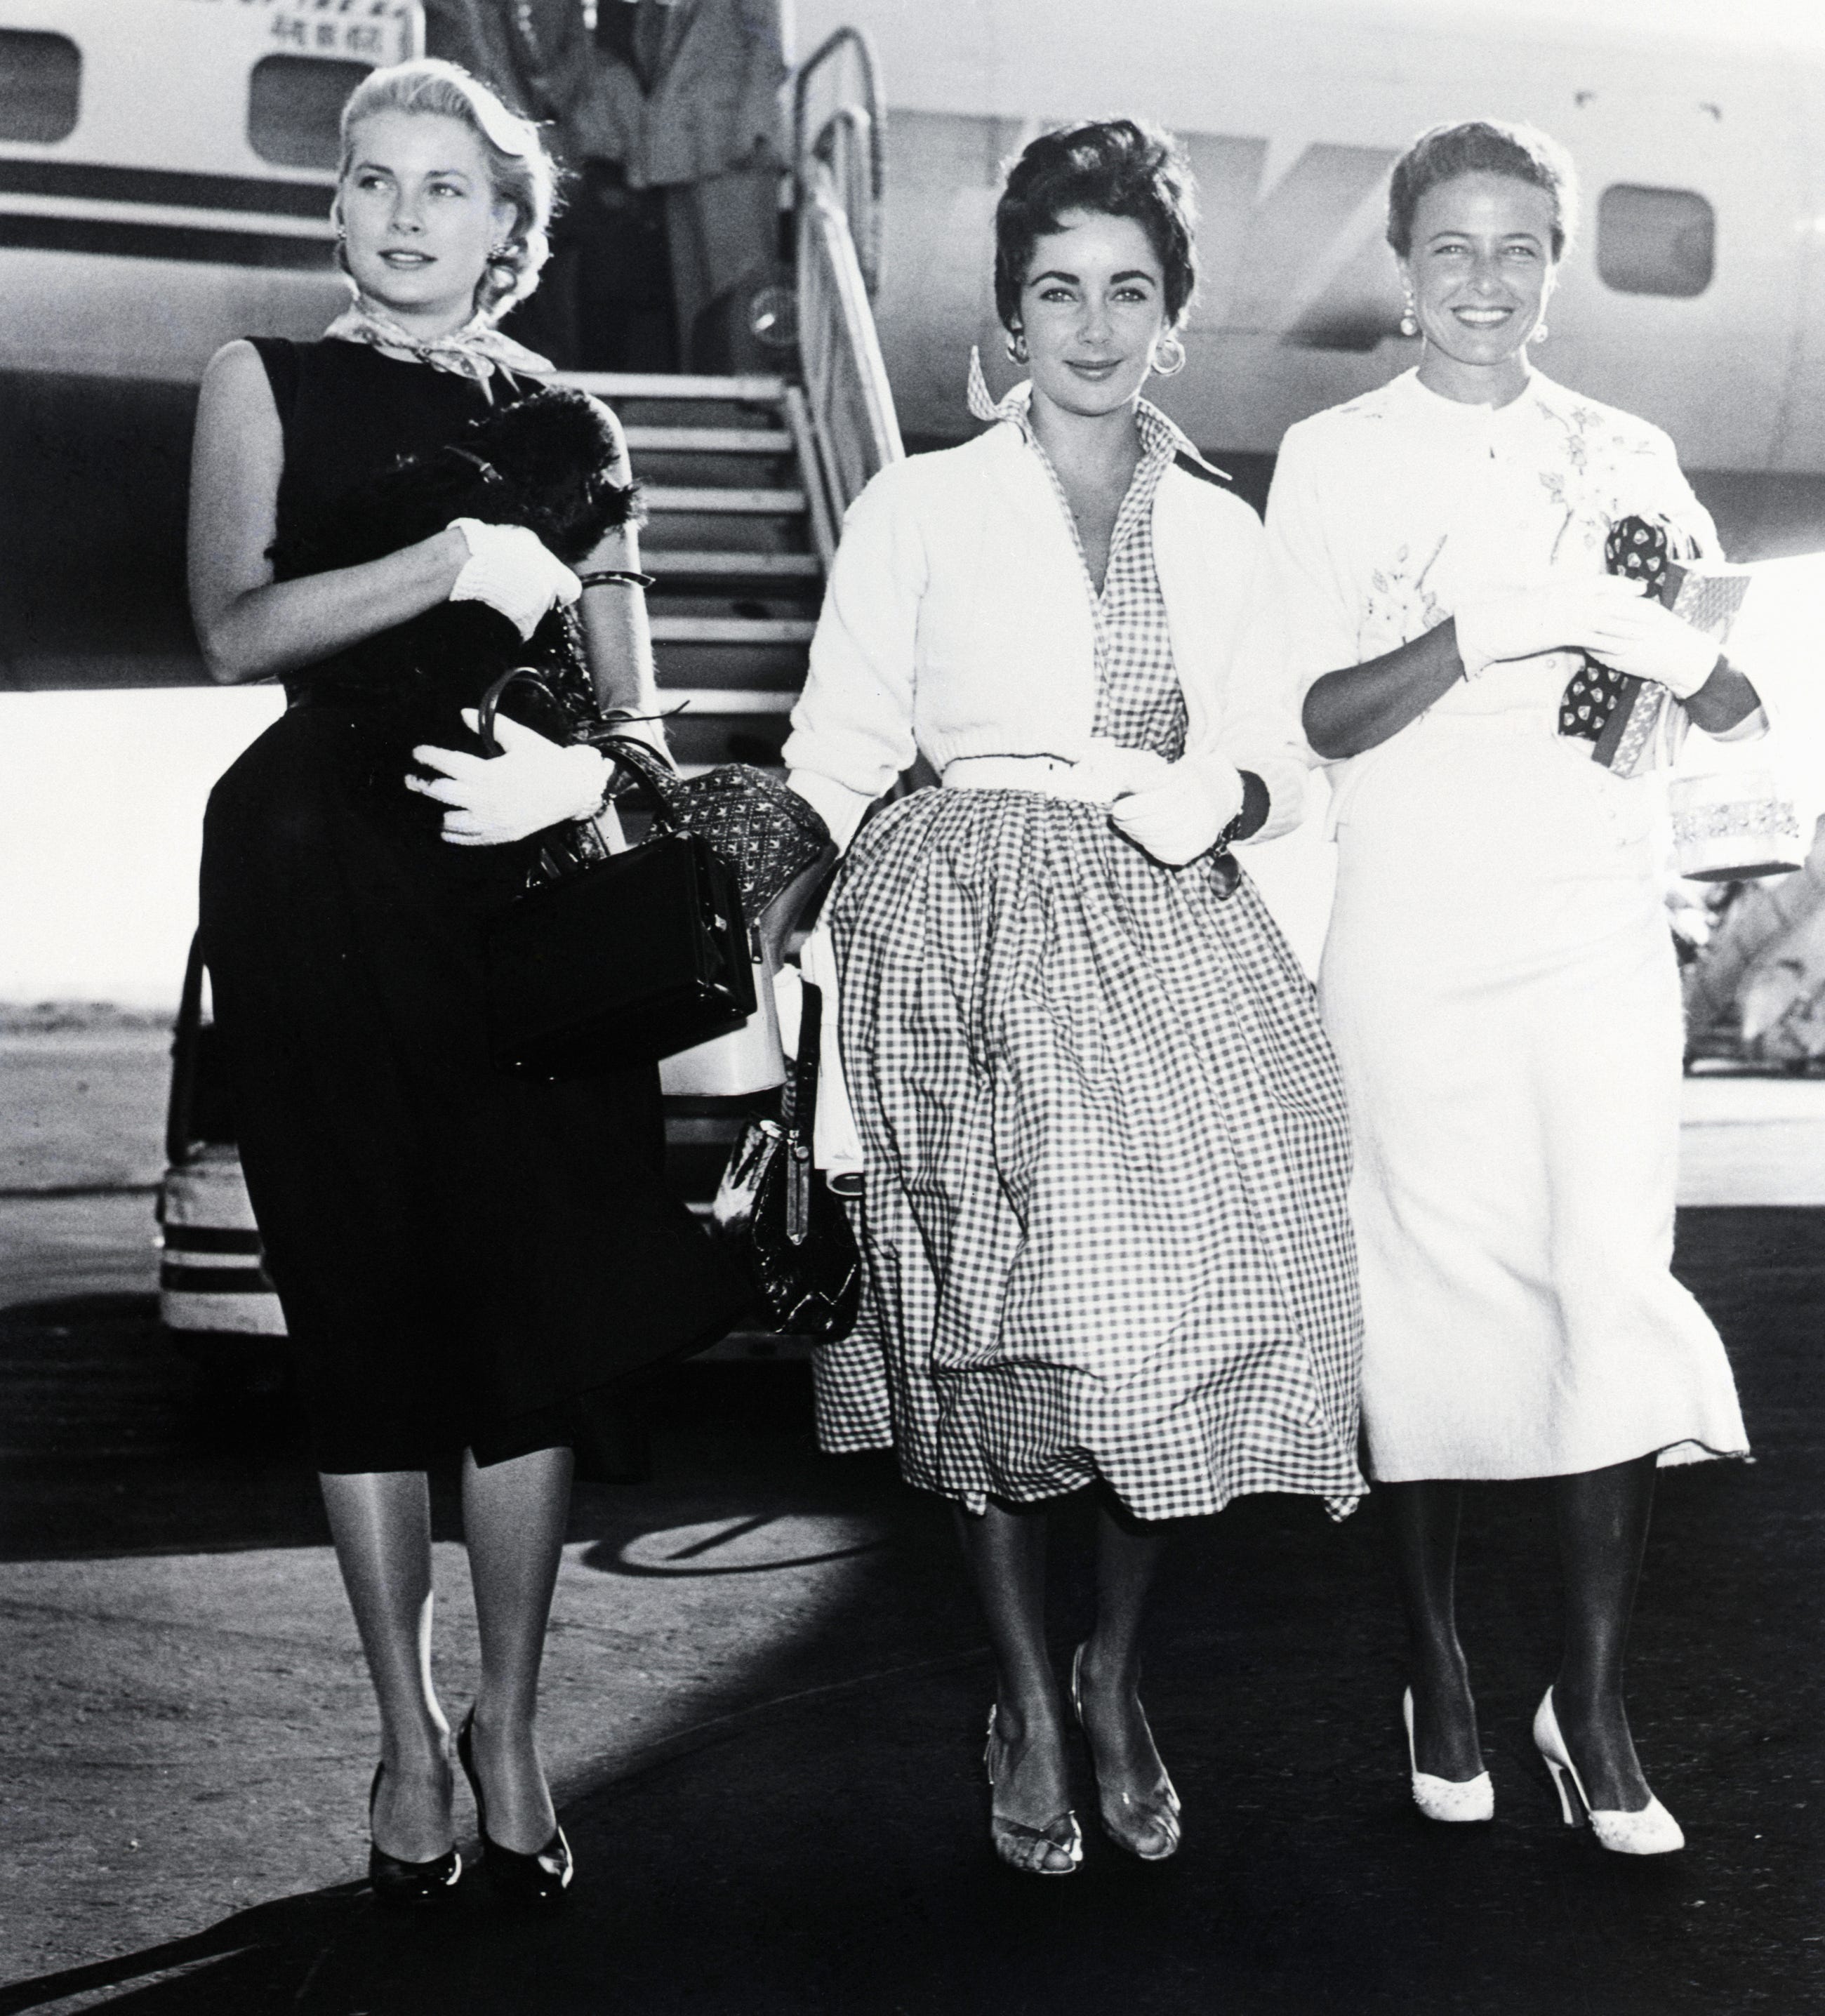 Ankunft am New Yorker Internationalen Flughafen, 01.09.1954: Grace Kelly, die ihren Urlaub beginnt;  Liz Taylor, auf dem Weg nach England, um sich Ehemann Michael Wilding anzuschließen;  und Larraine Day, die hier ist, um die Giants ihres Mannes anzufeuern.